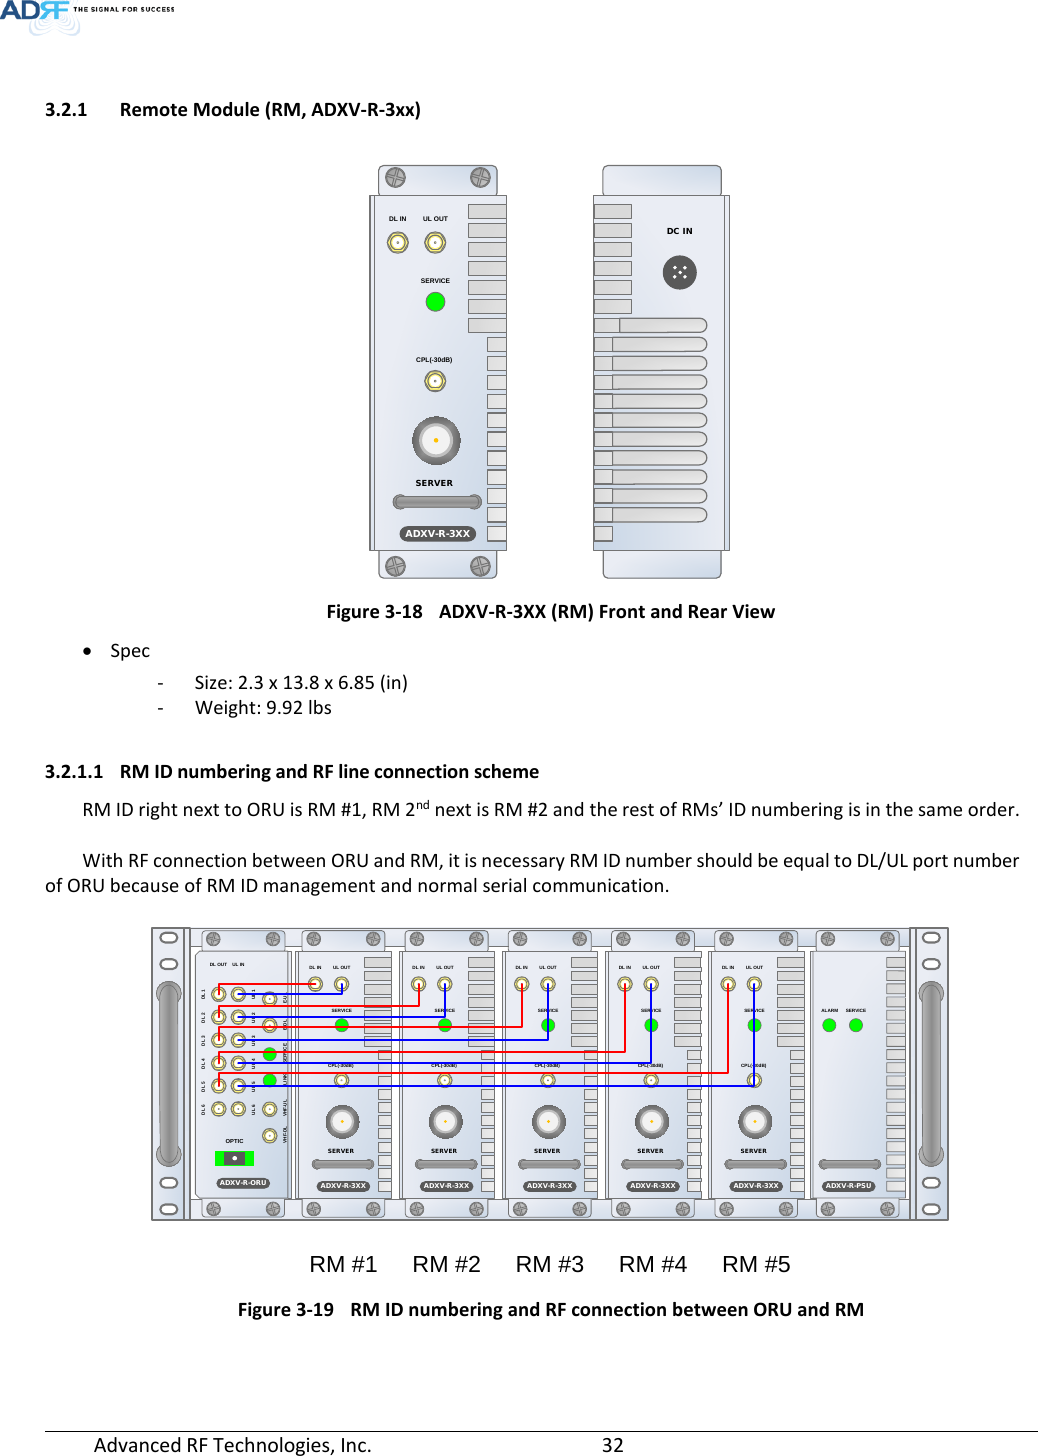 Page 32 of ADRF KOREA ADXV-R-25VUNA DAS (Distributed Antenna System) User Manual ADXV DAS